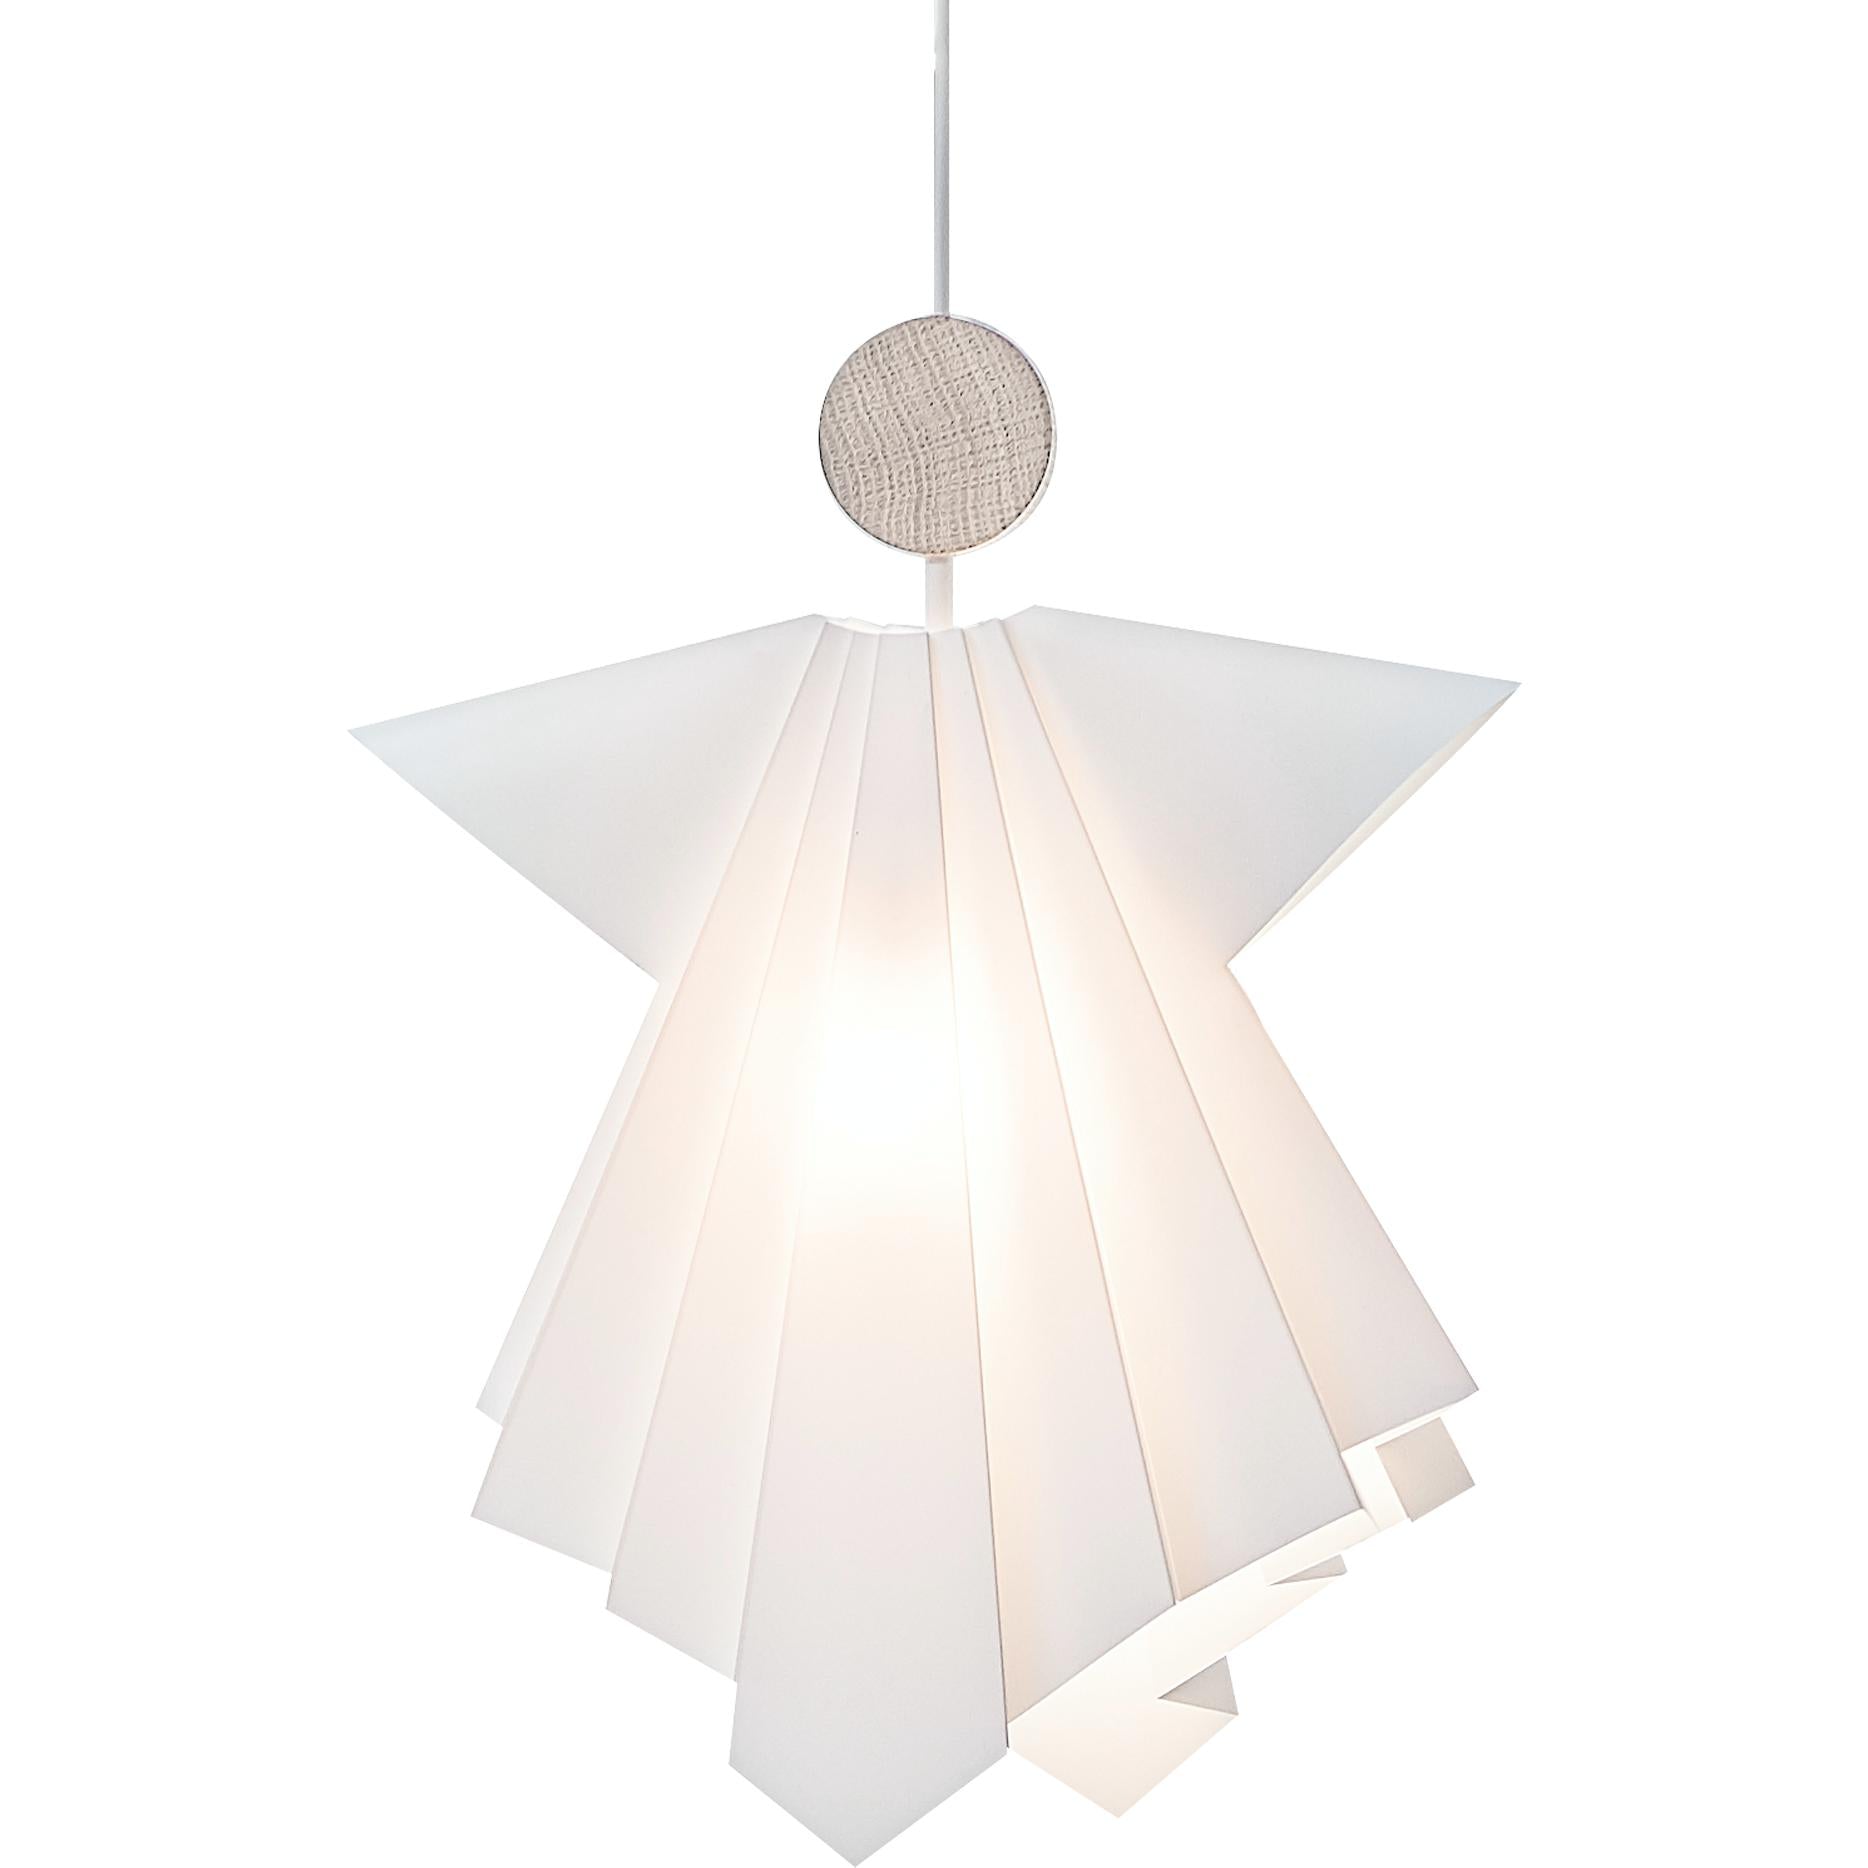 LE KLINT Uriel Engel hanger lamp, xl